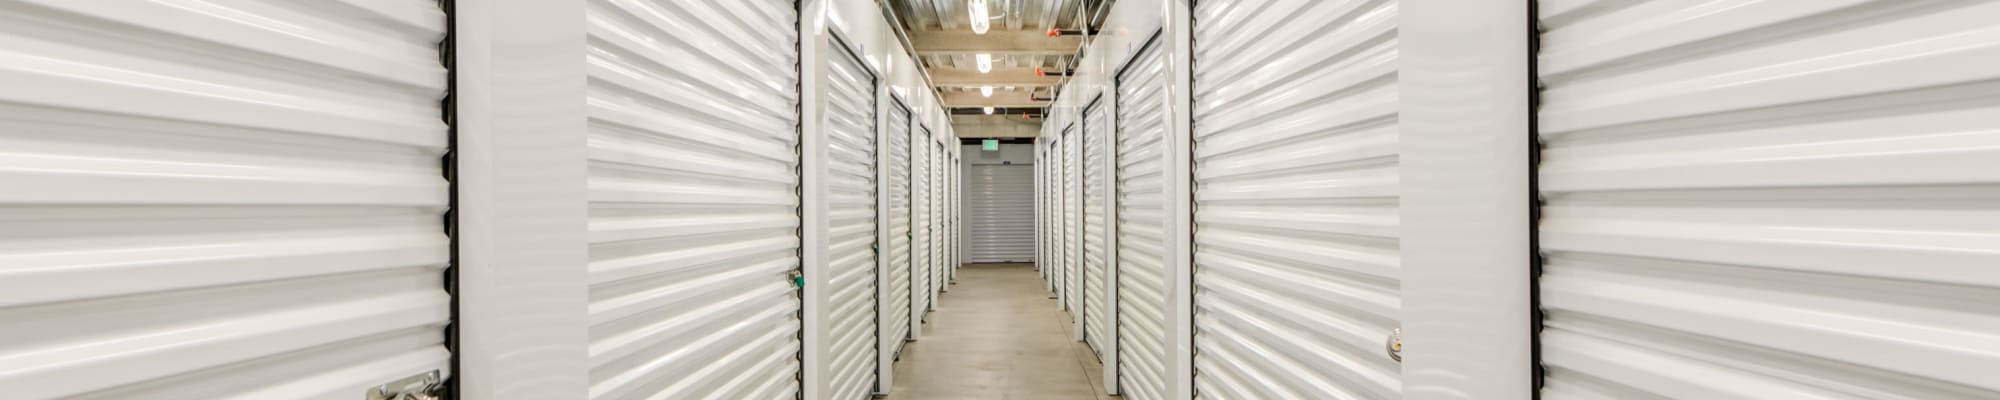 Self storage units in Storage Etc... De Soto in Chatsworth, California